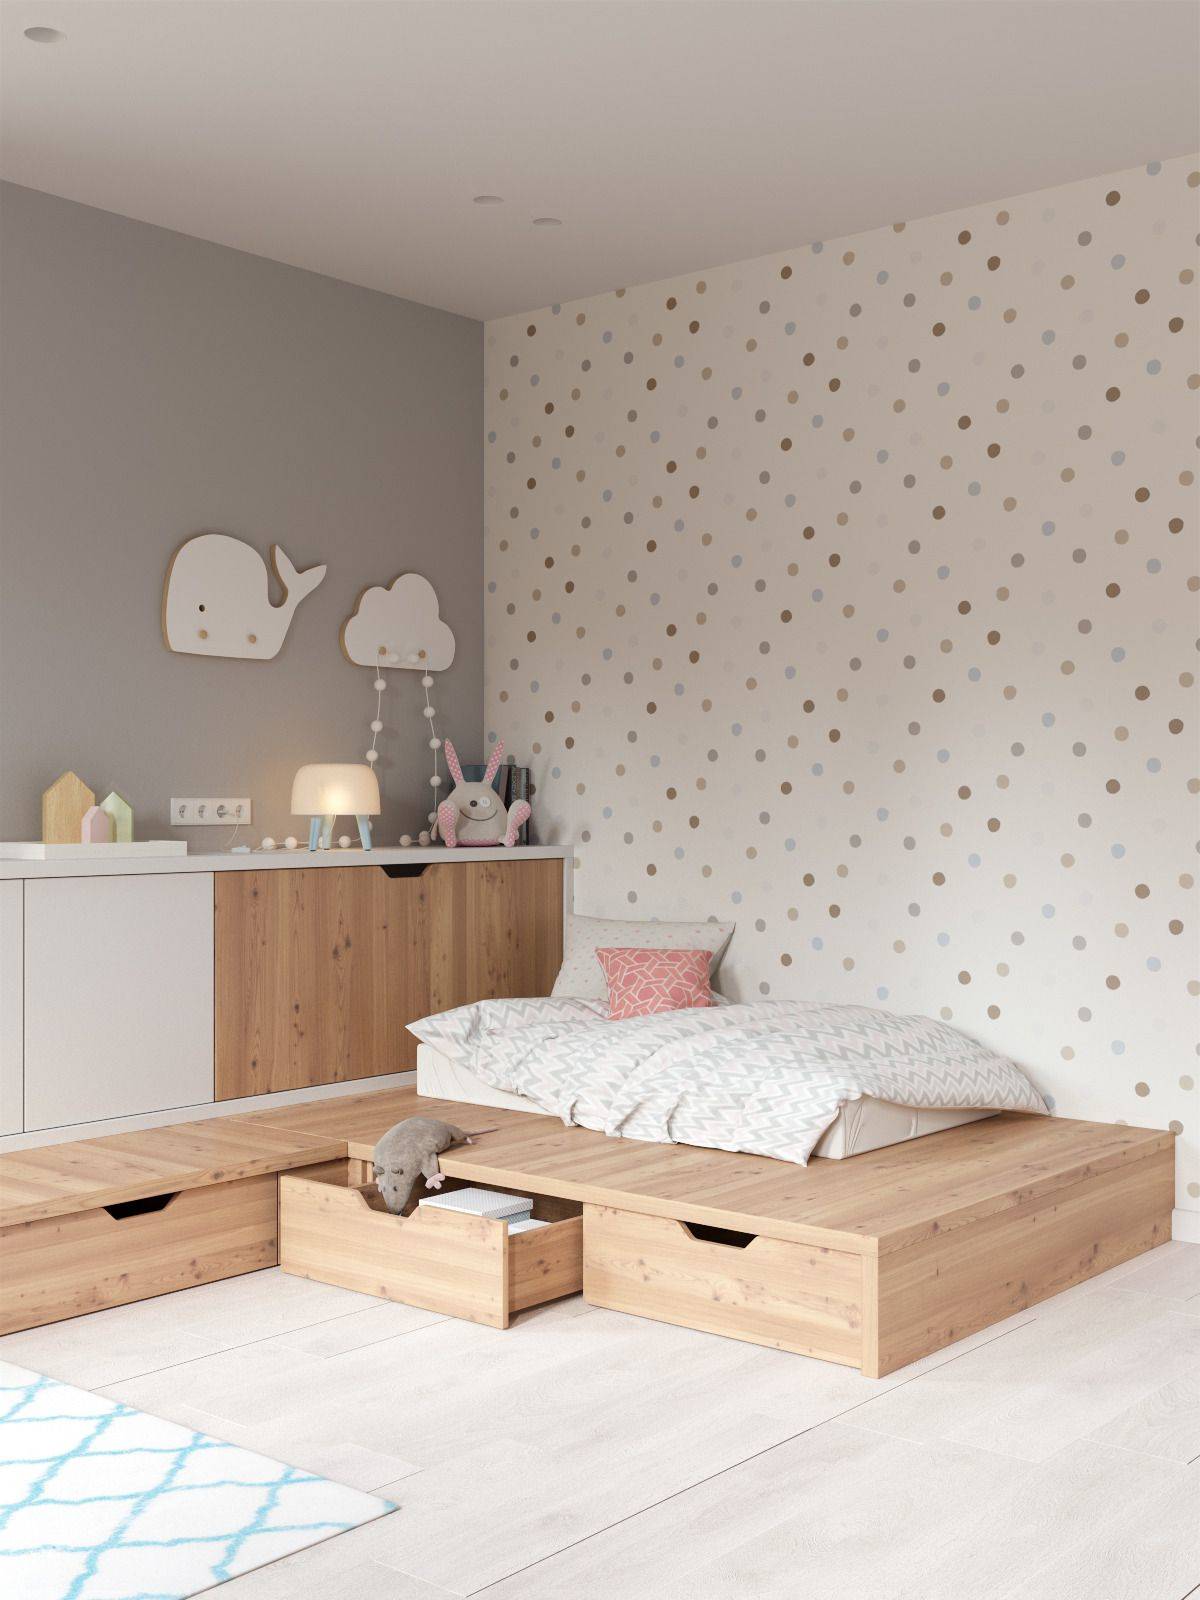 Habitación infantil decorada con el método Montessori con almacenaje bajo la cama